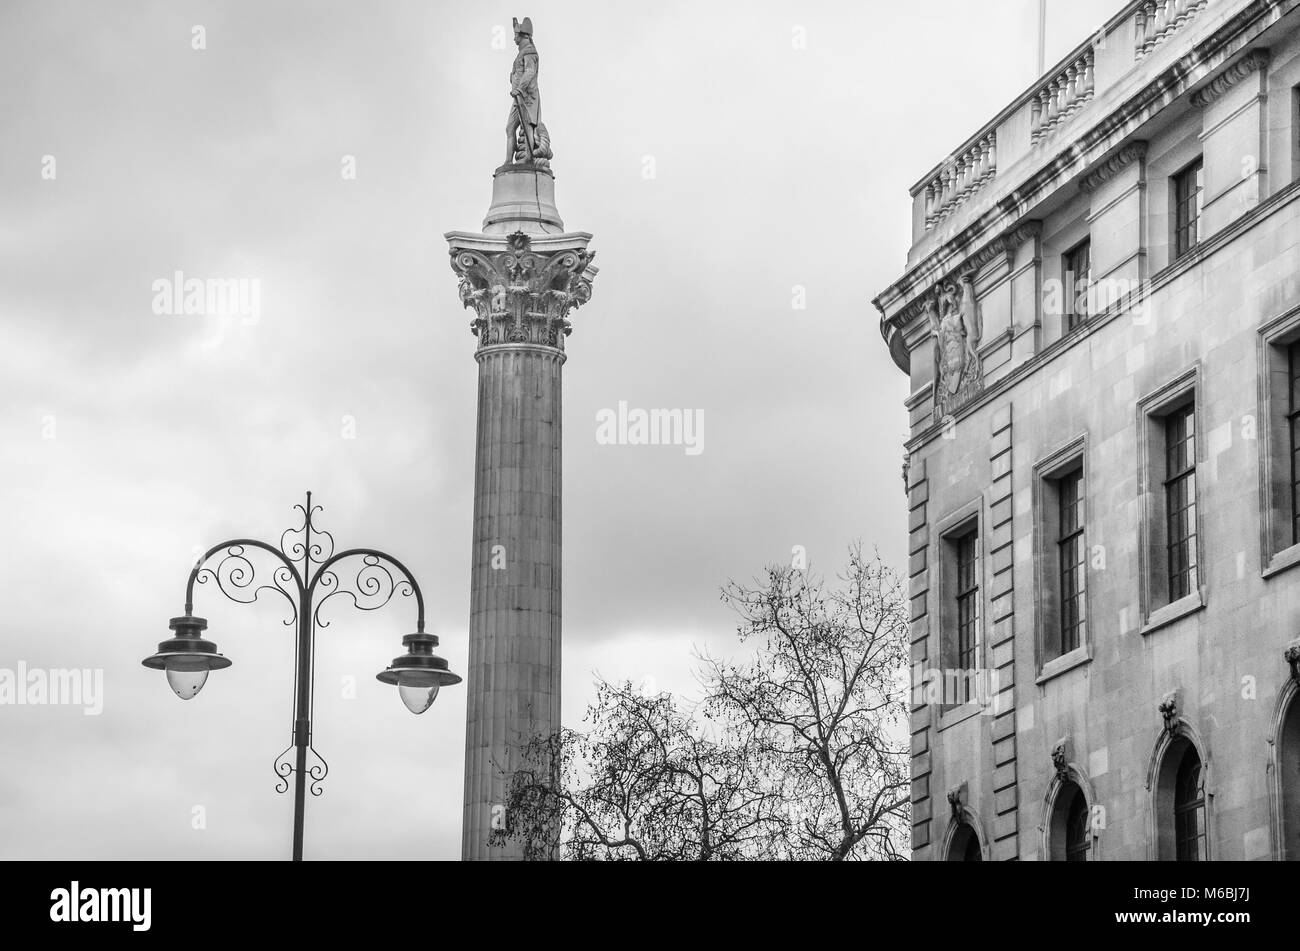 Londres, UK - OCT. 18, 2018 : la Colonne Nelson est un monument situé sur Trafalgar Square dans le centre de Londres construit pour commémorer l'amiral Horatio Nelson. Banque D'Images